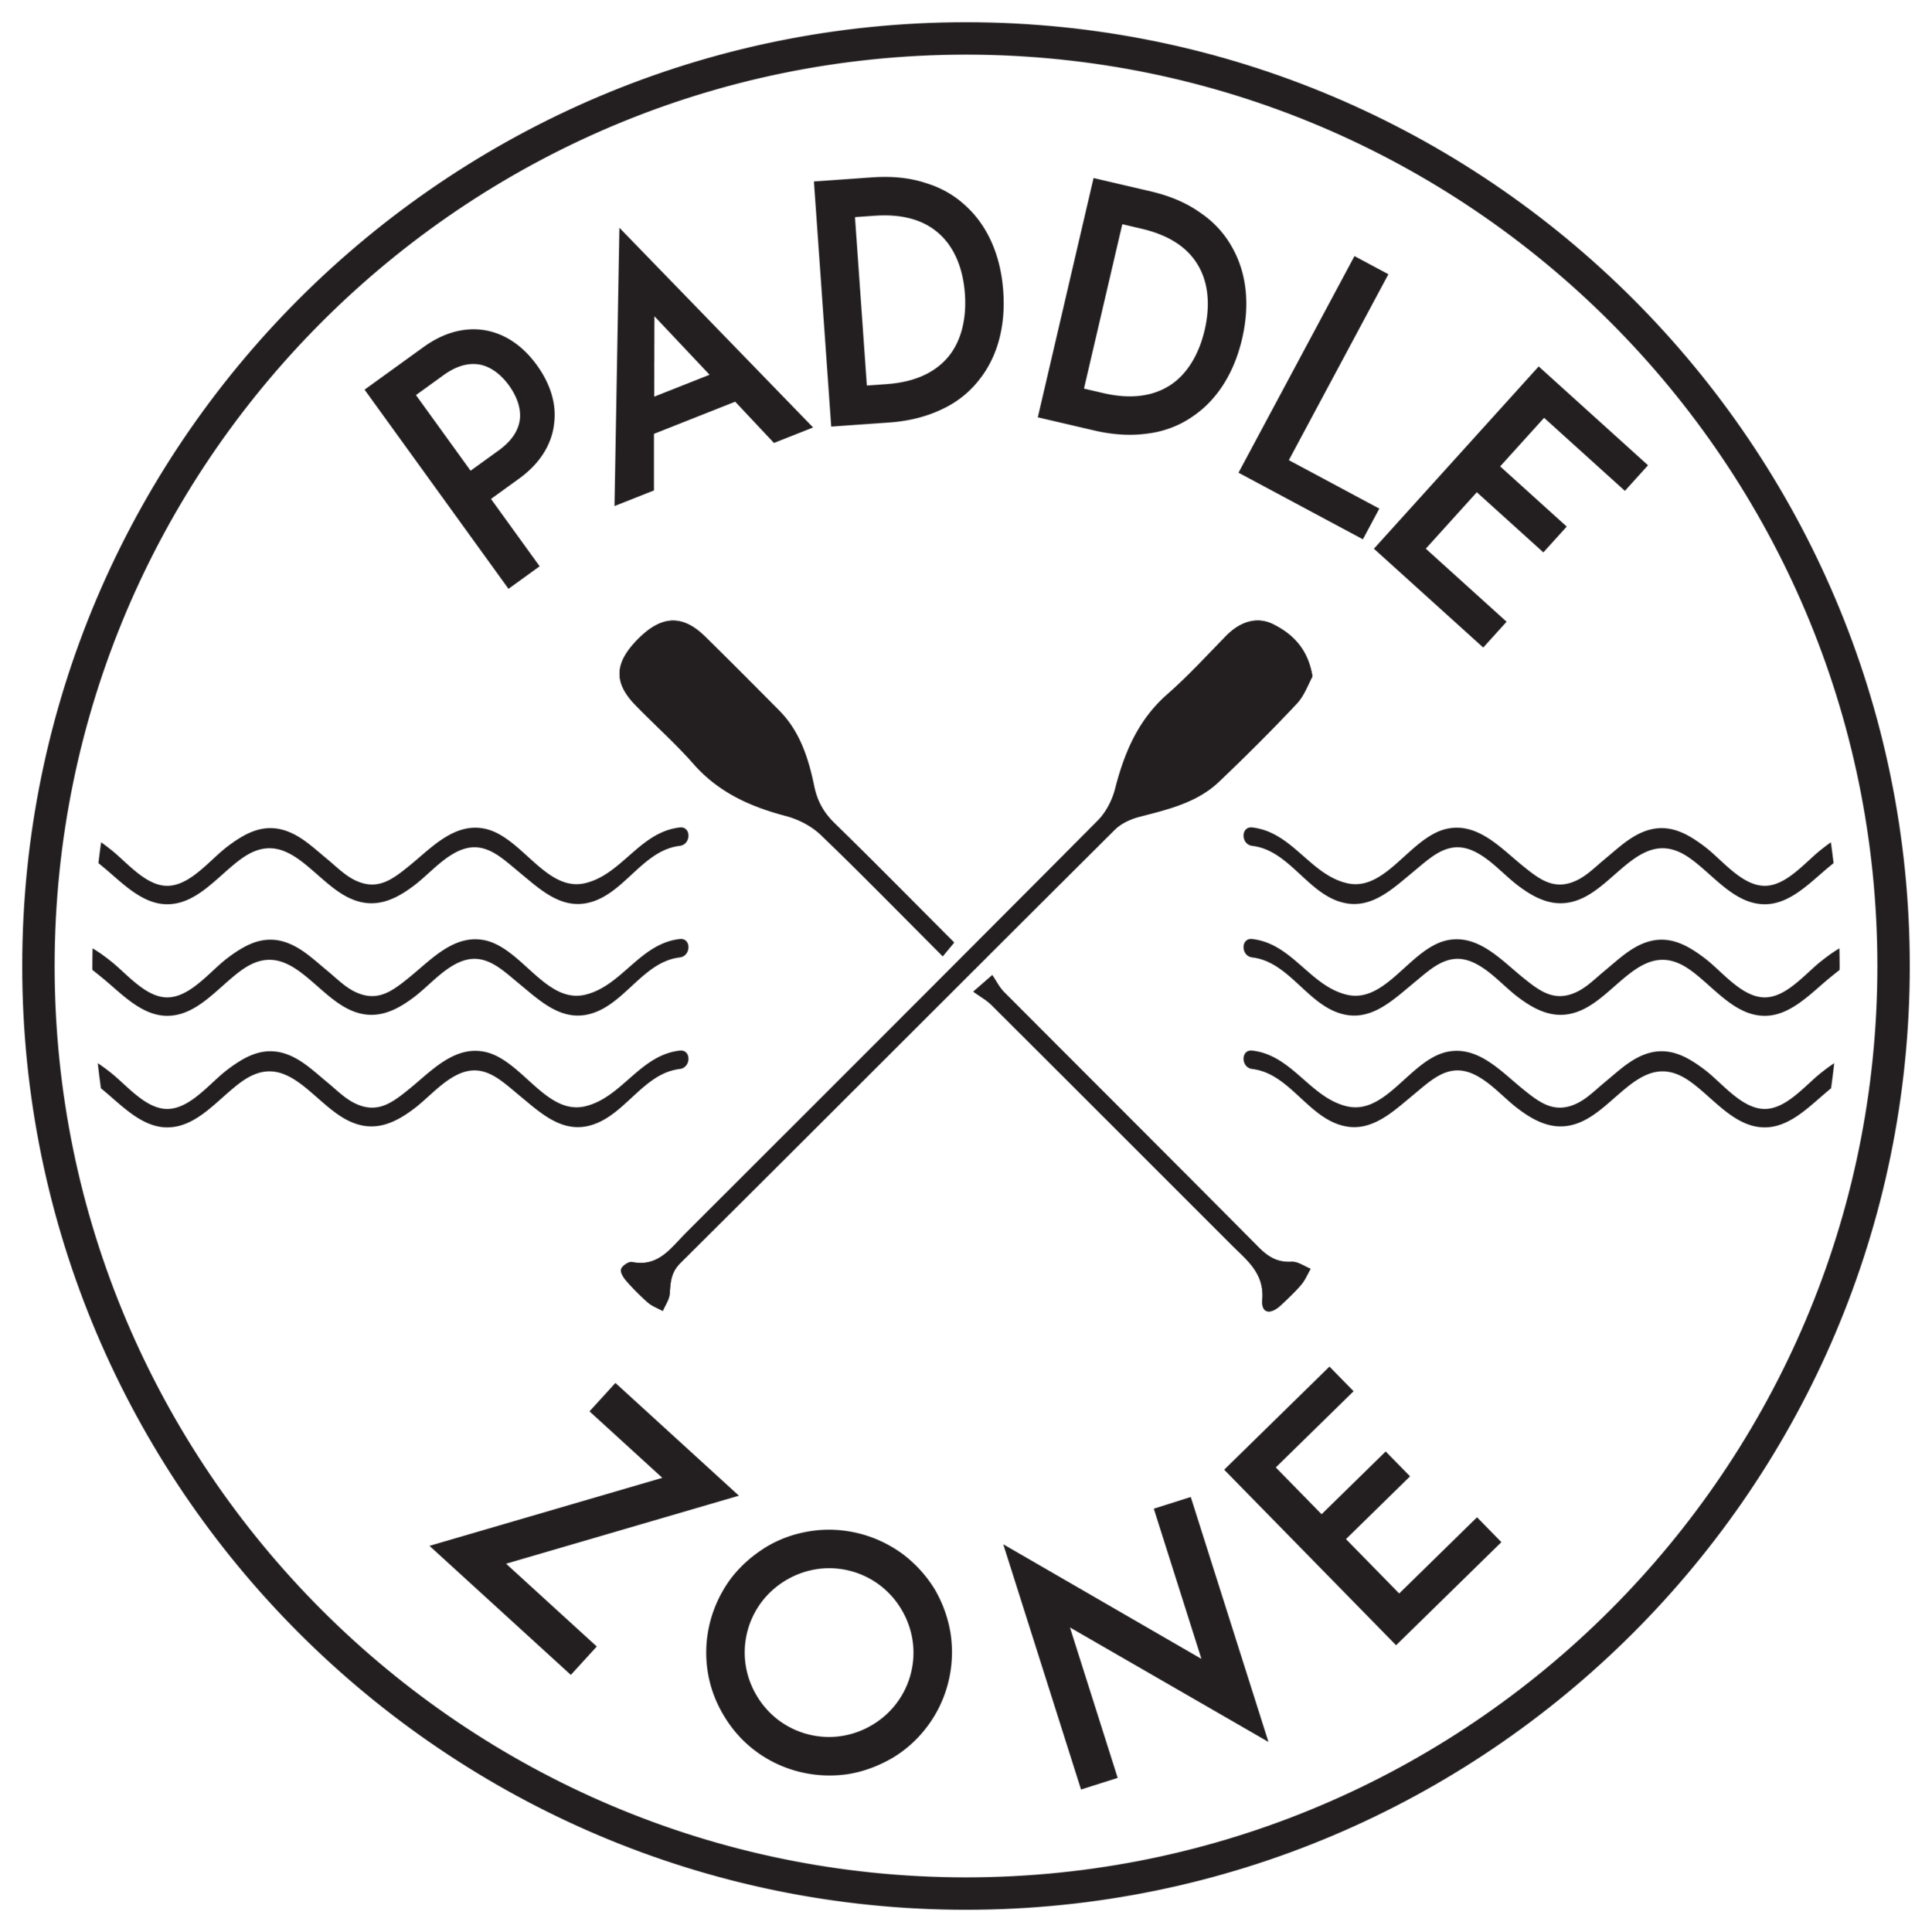 Paddle Zone